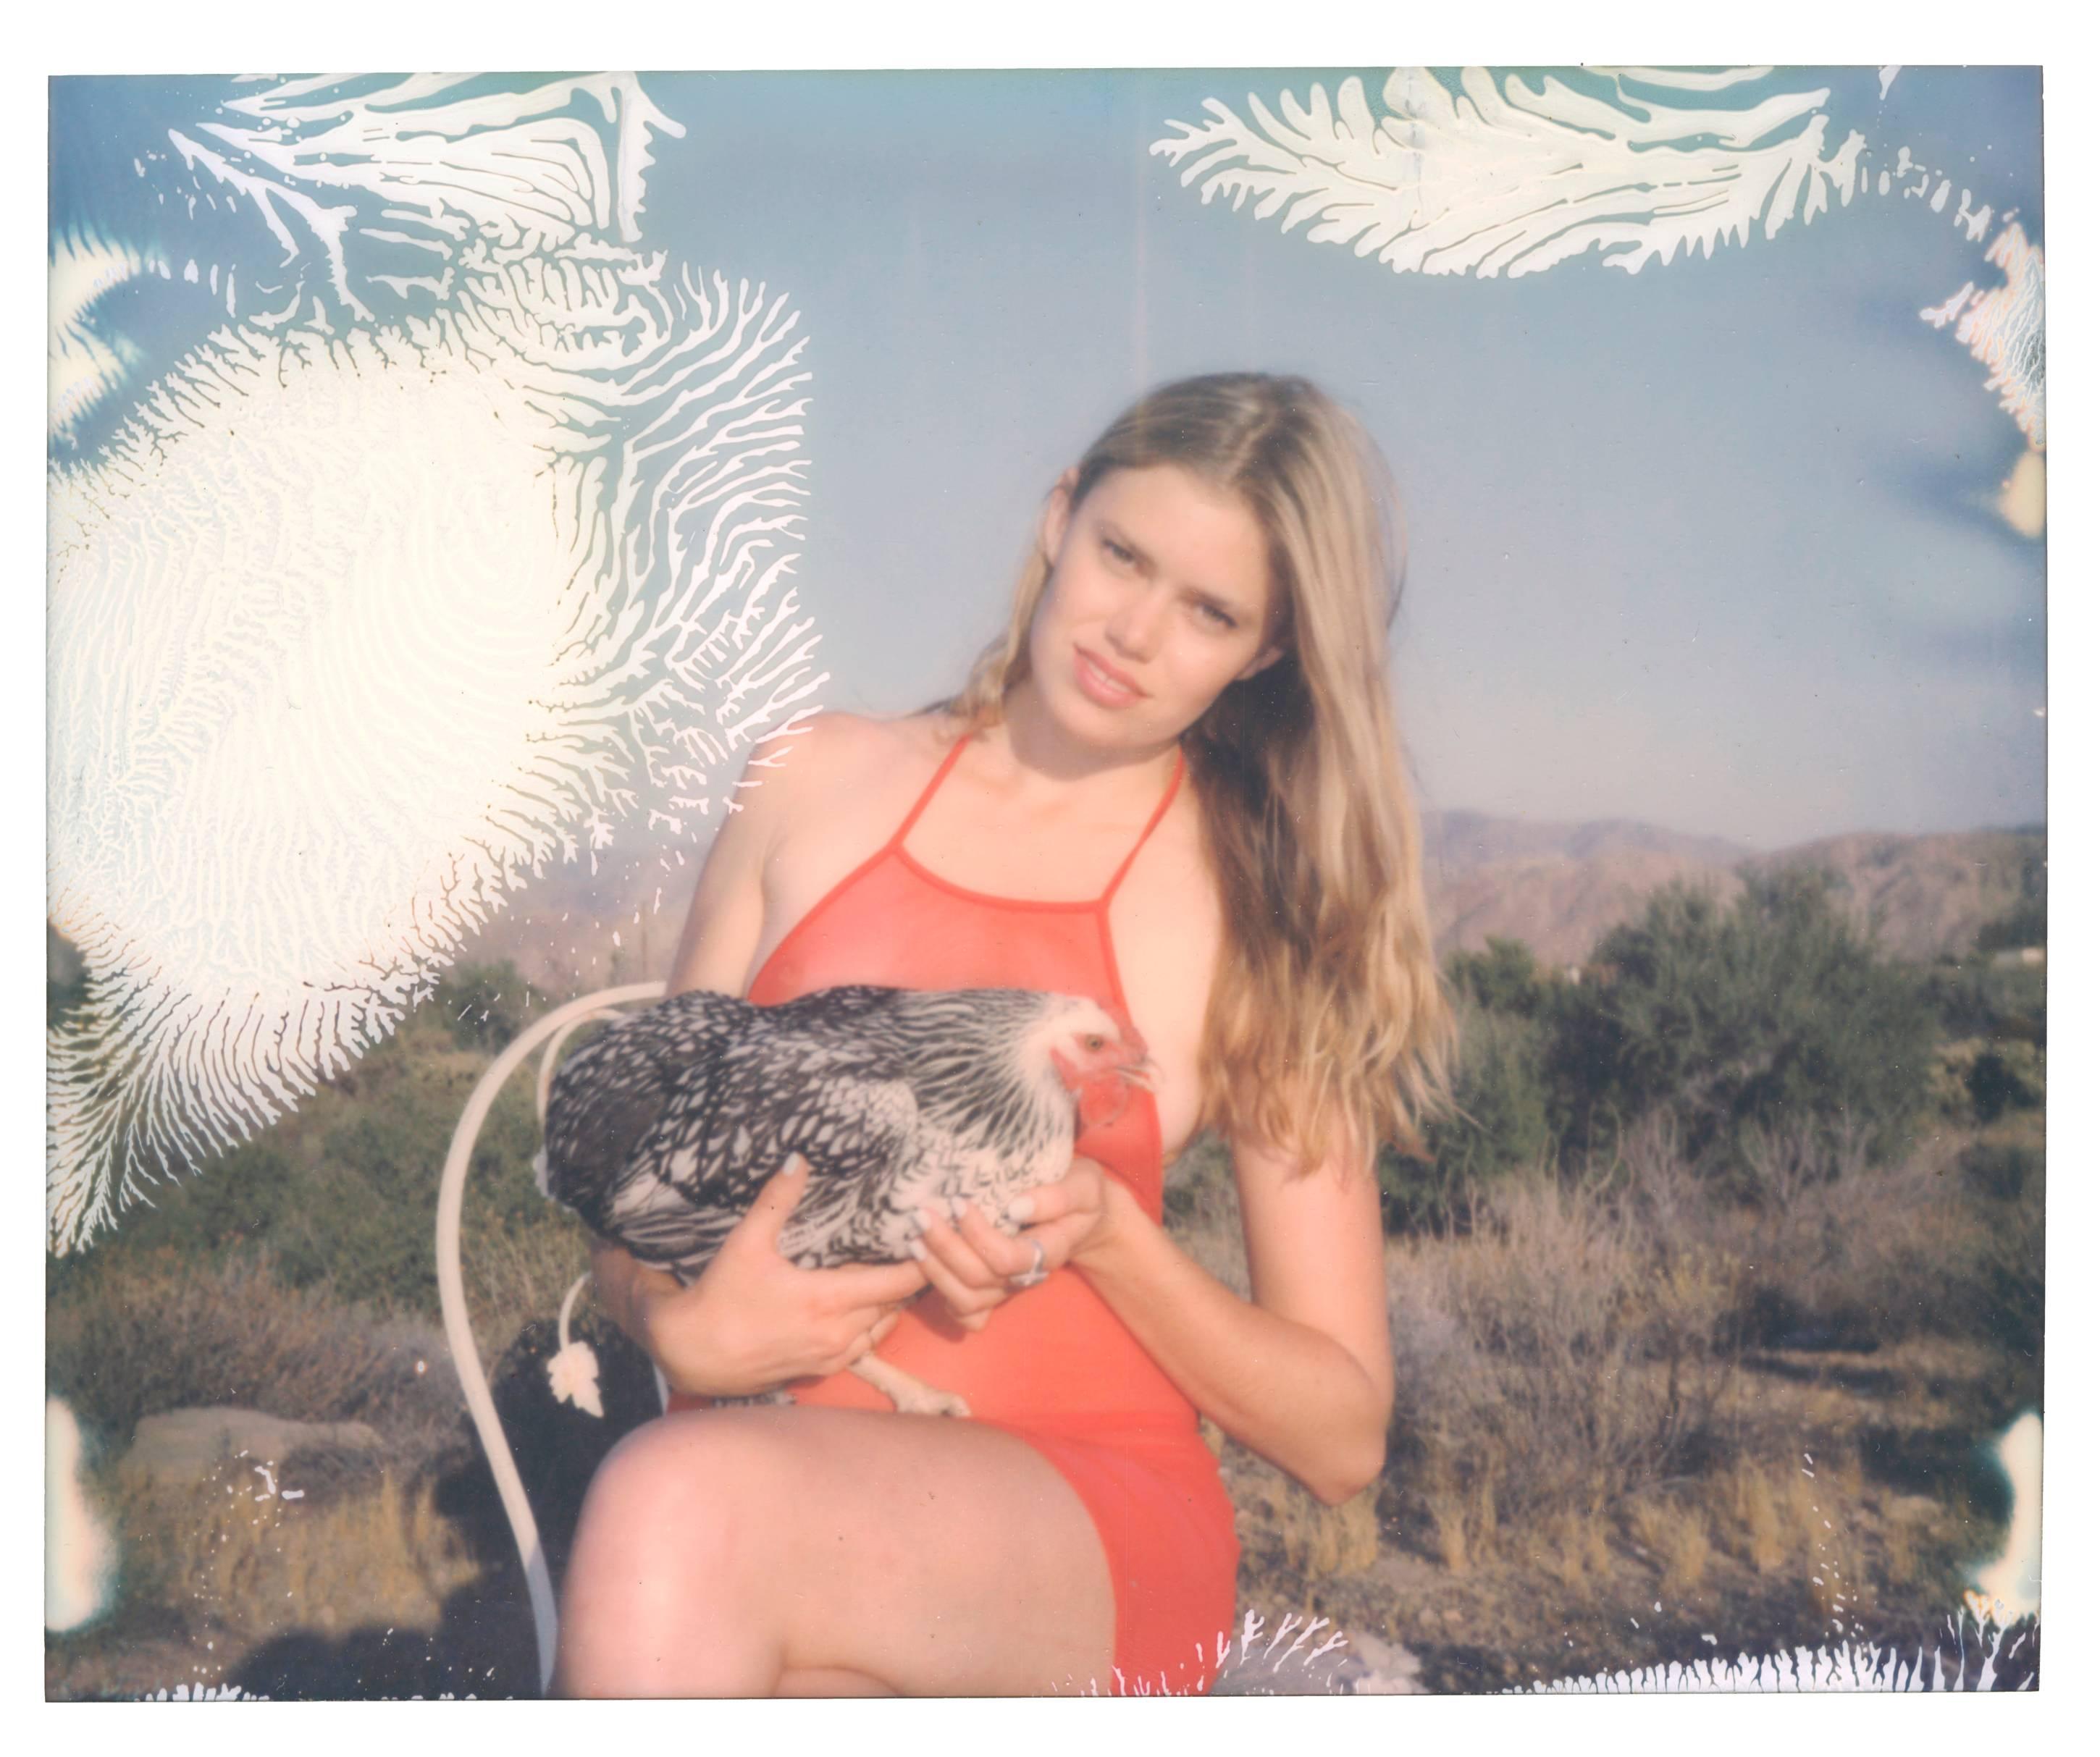 Stefanie Schneider Portrait Photograph - Midnight to Moonshine (Chicks and Chicks)